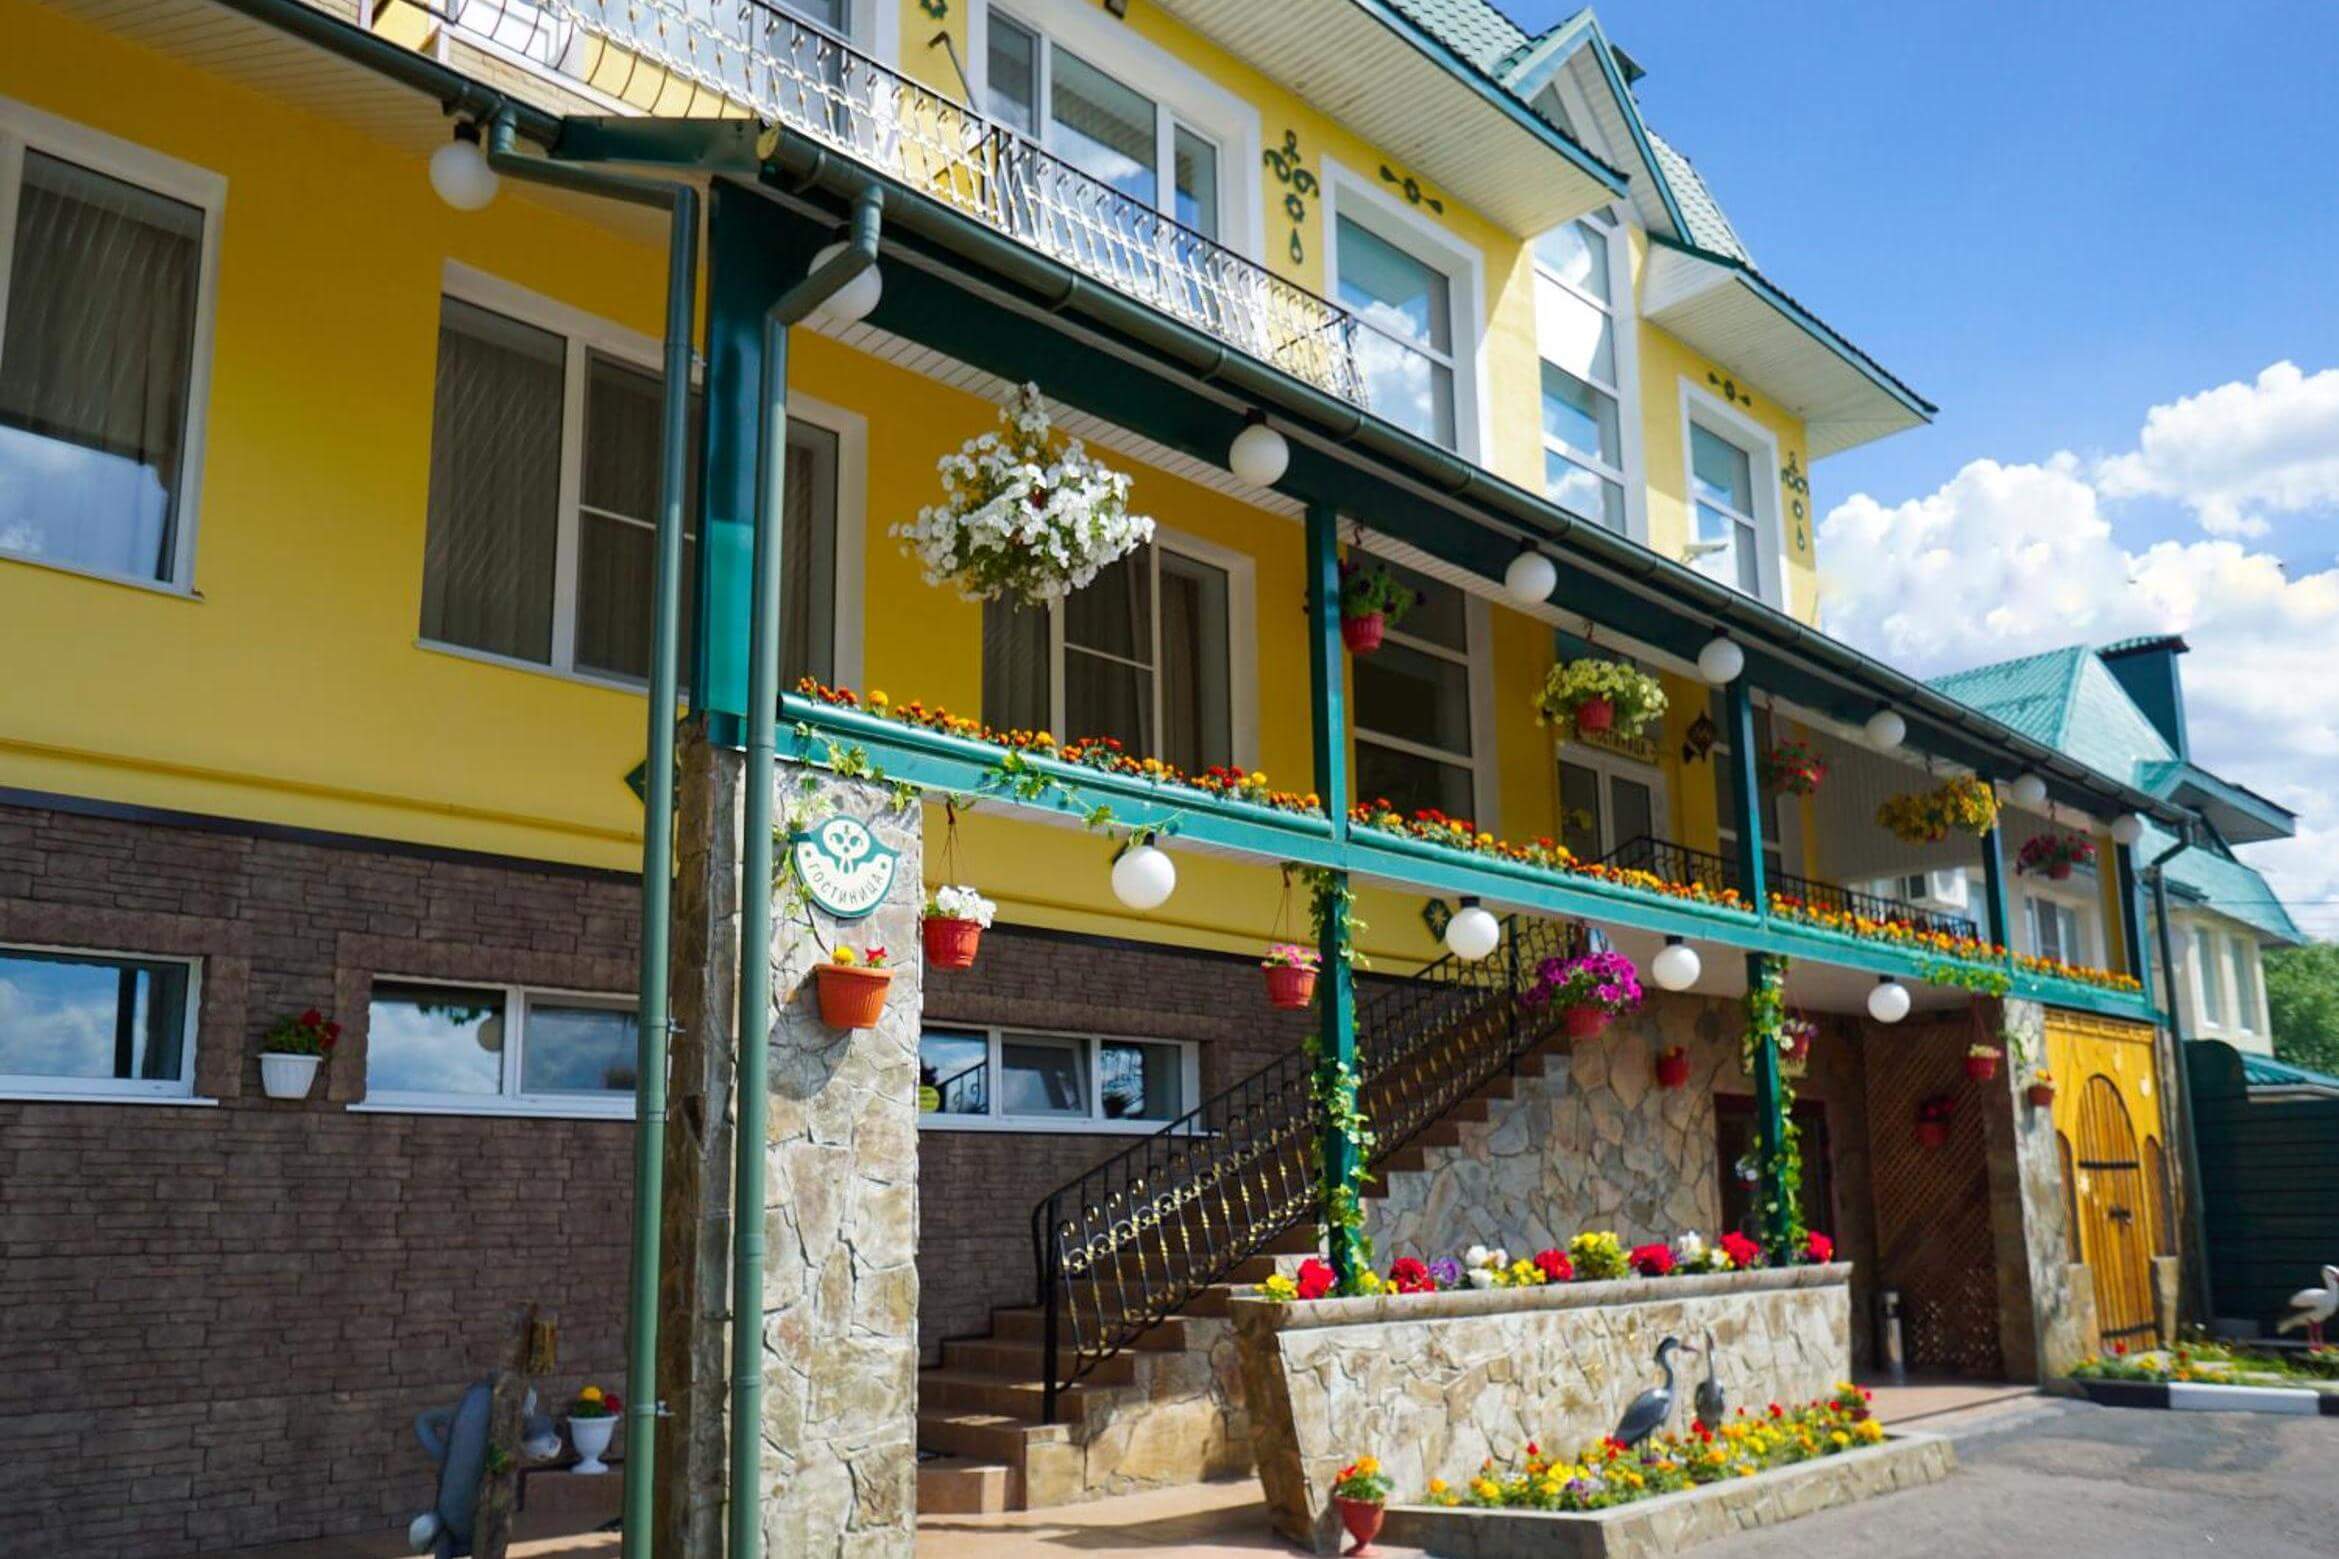 Фасад и входная группа украшена цветами в горшках.